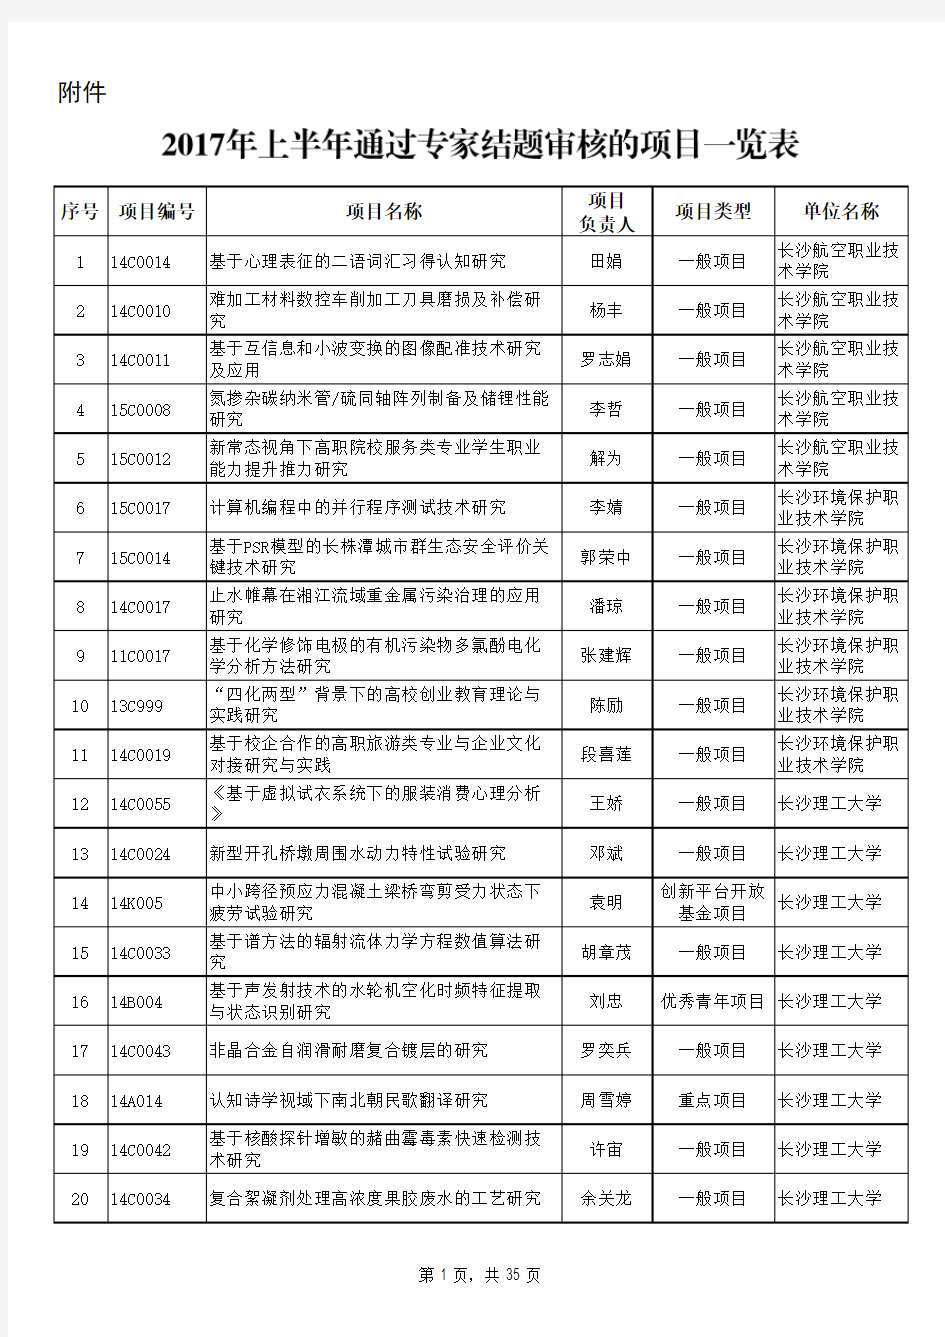 2017年上半年通过专家结题审核的湖南省教育厅科研项目一览表